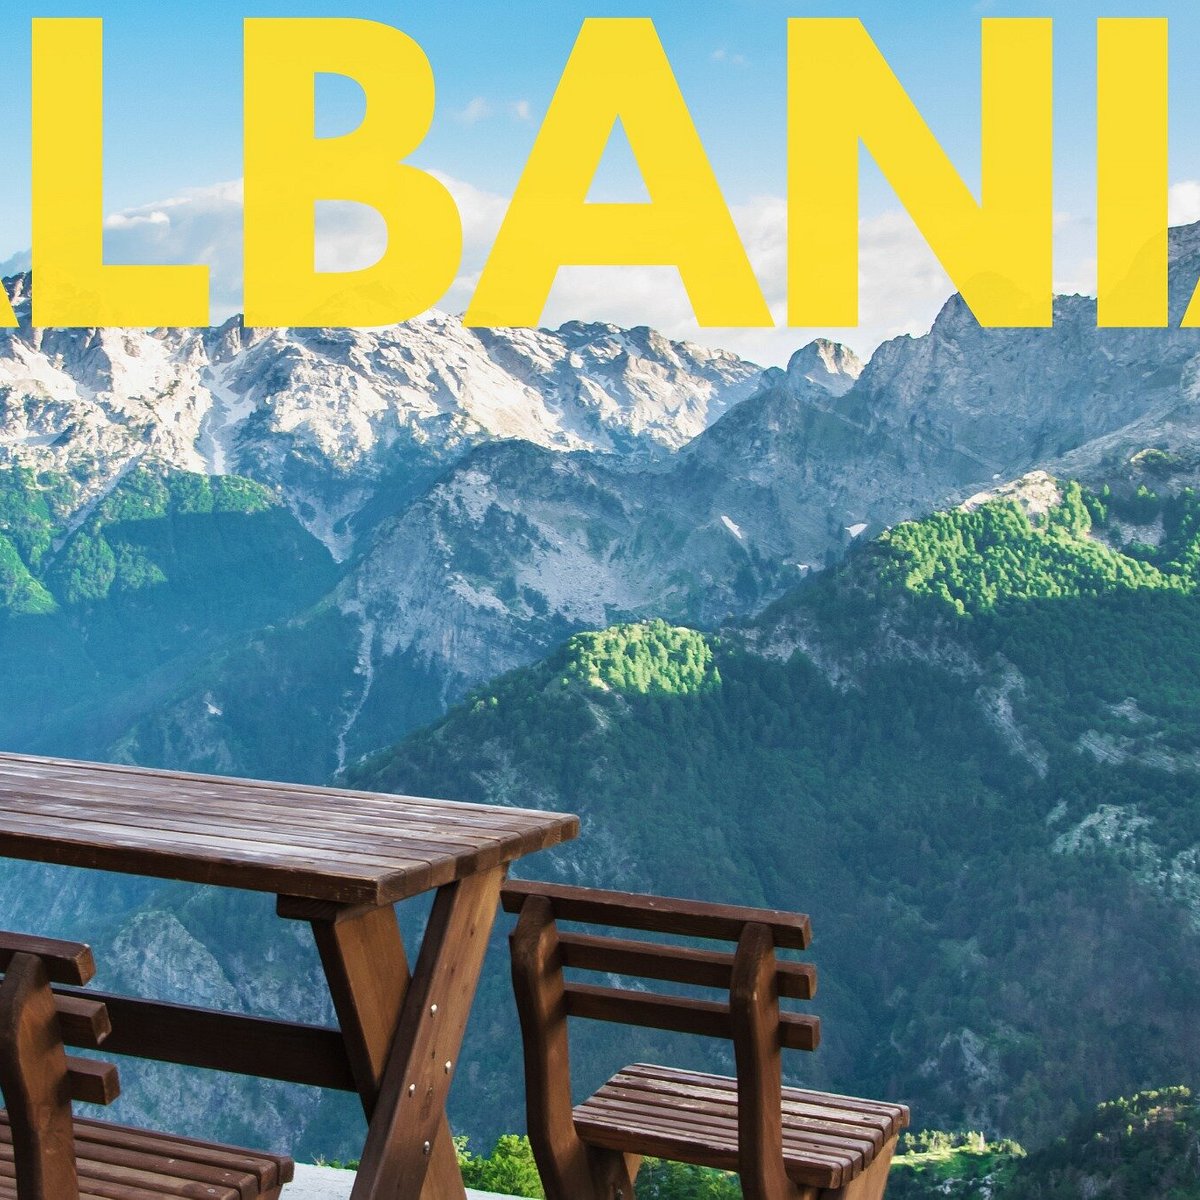 albania travel agency